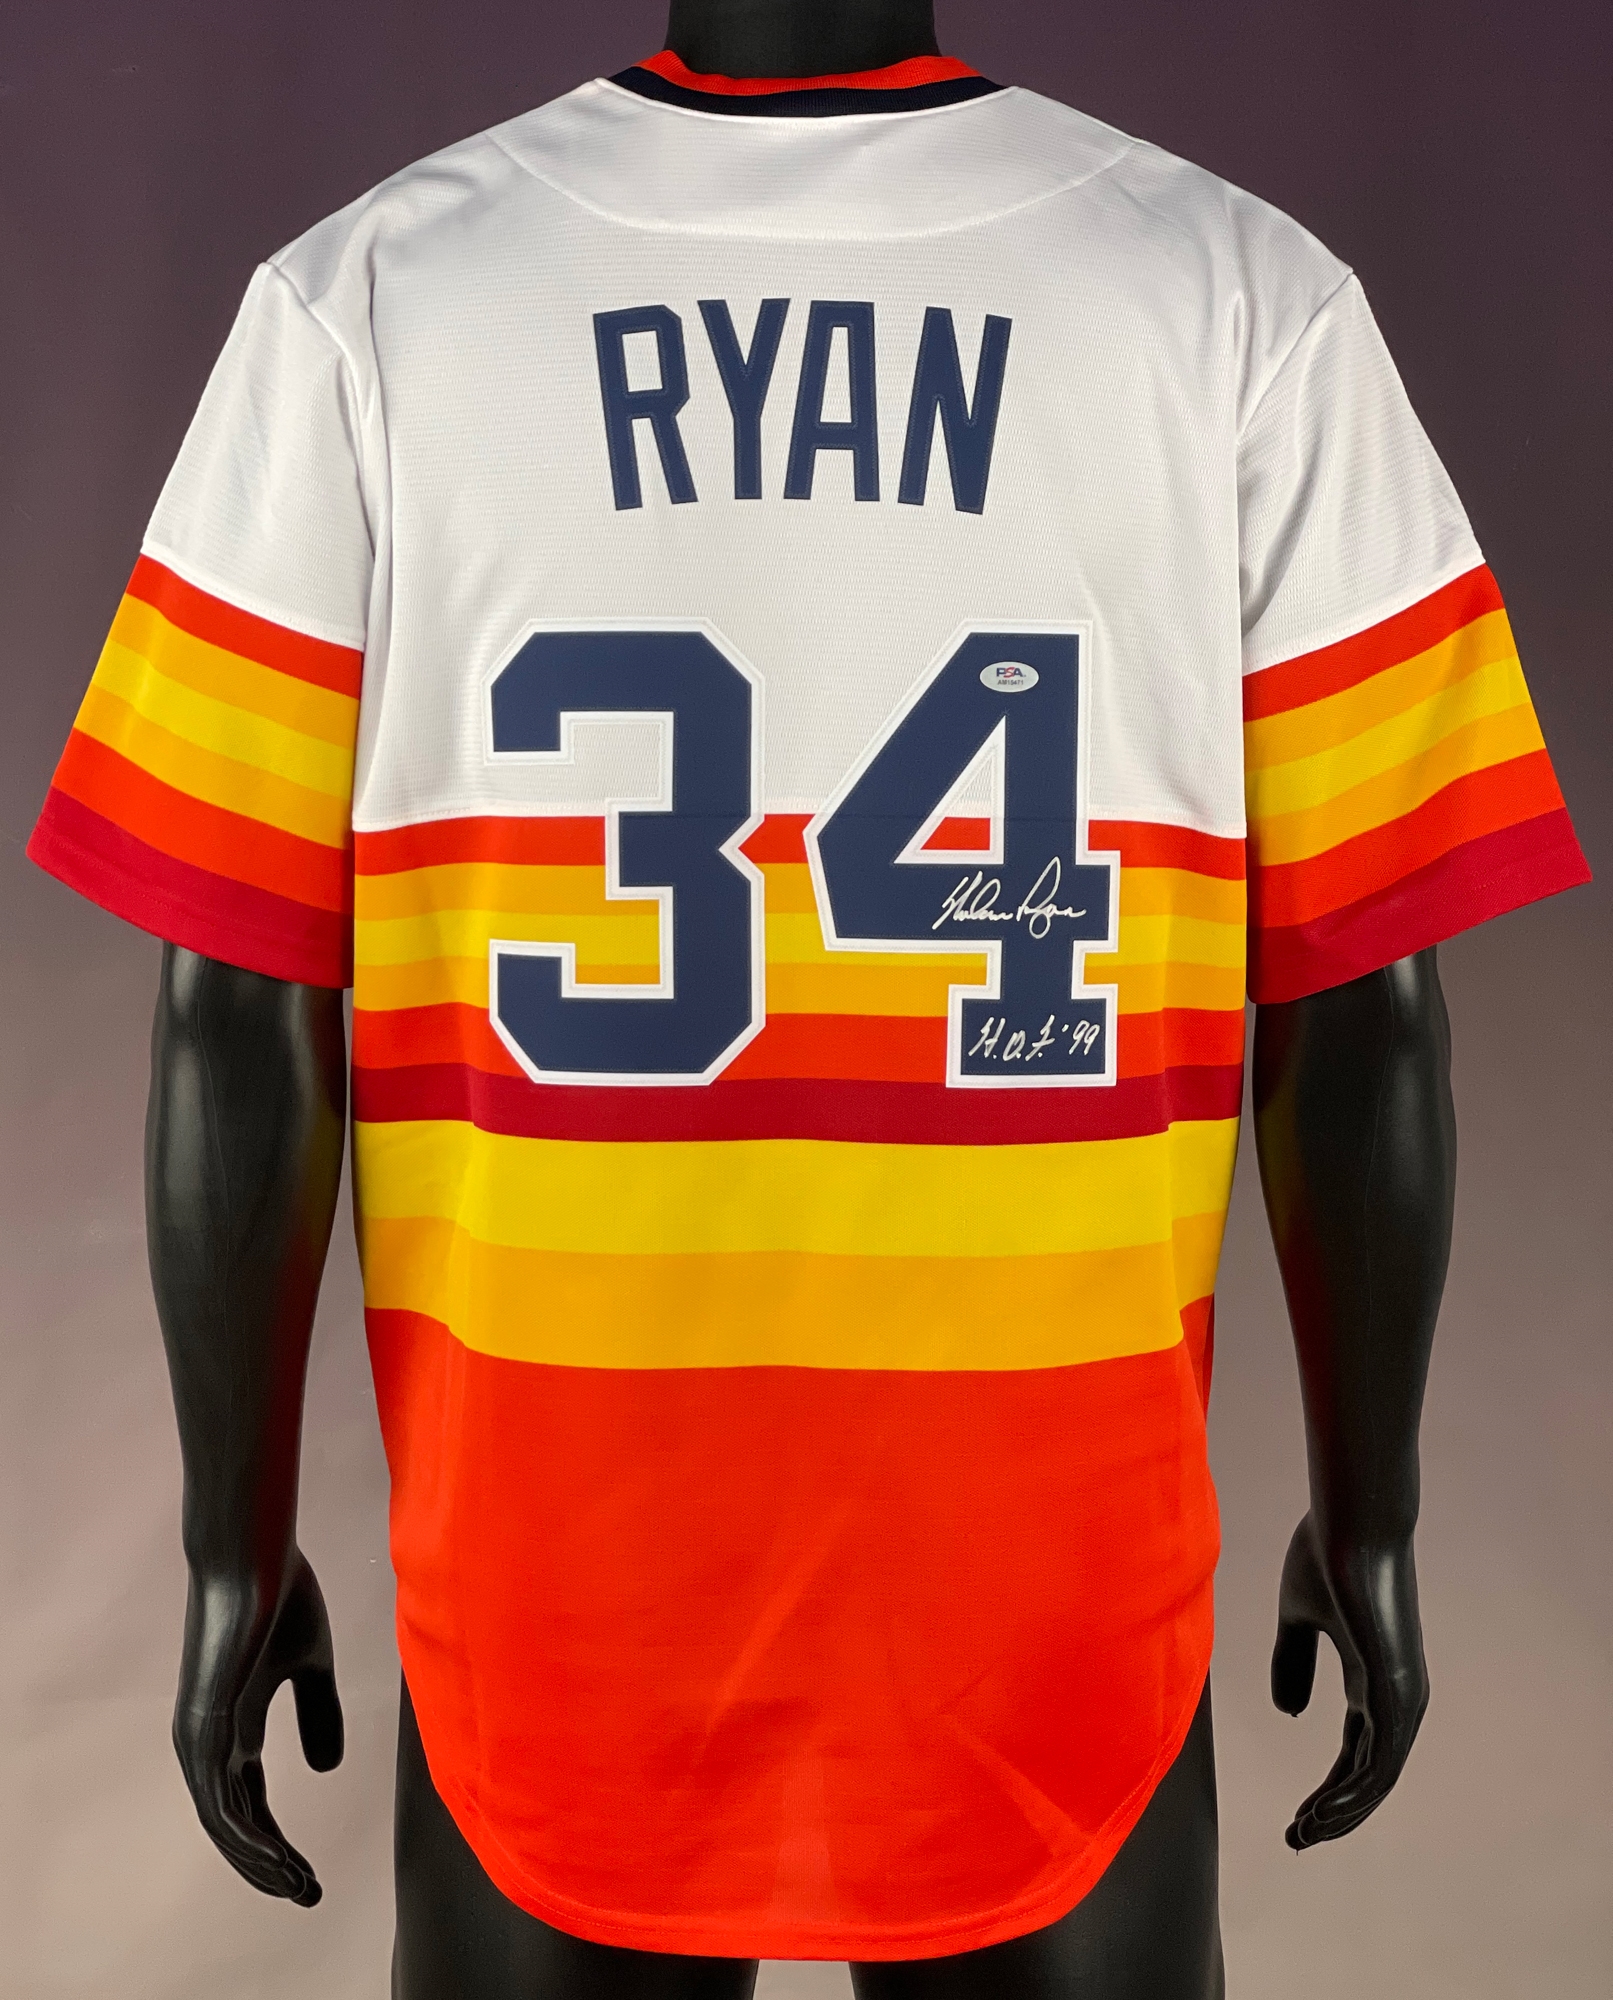 Nolan Ryan Shirt 